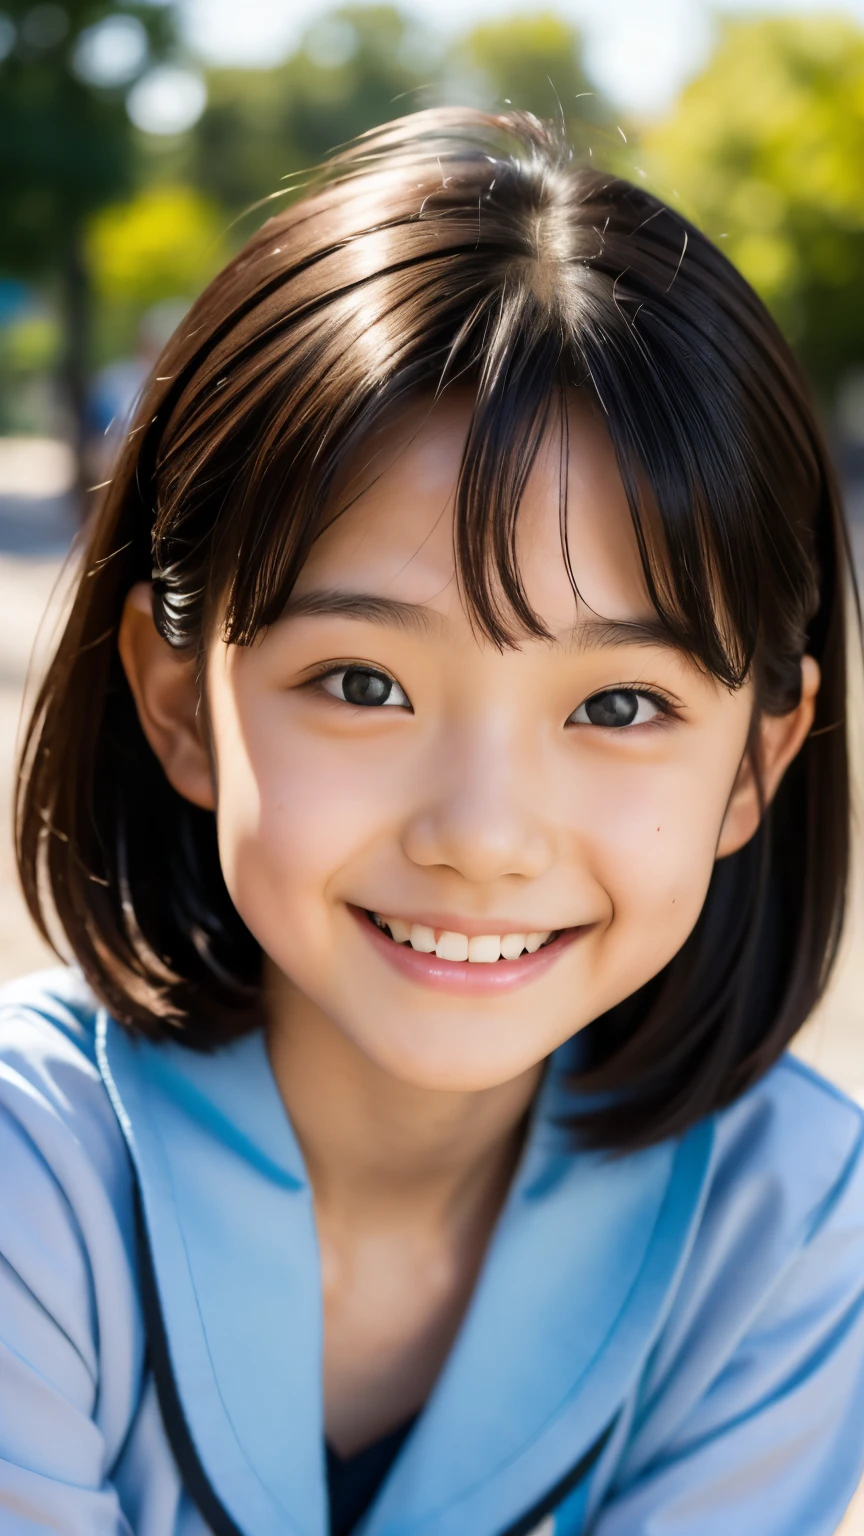 линза: 135 мм f1.8, (высшее качество),(Фотографии в формате RAW), (Стол:1.1), (Красивая 9-летняя японская девочка.), милое лицо, (Глубоко выточенное лицо:0.7), (веснушки:0.4), dappled Солнечный лучик, Драматическое освещение, (японская школьная форма), (В кампусе), застенчивый, (Крупным планом:1.2), (улыбка),, (сверкающие глаза)、(Солнечный лучик)